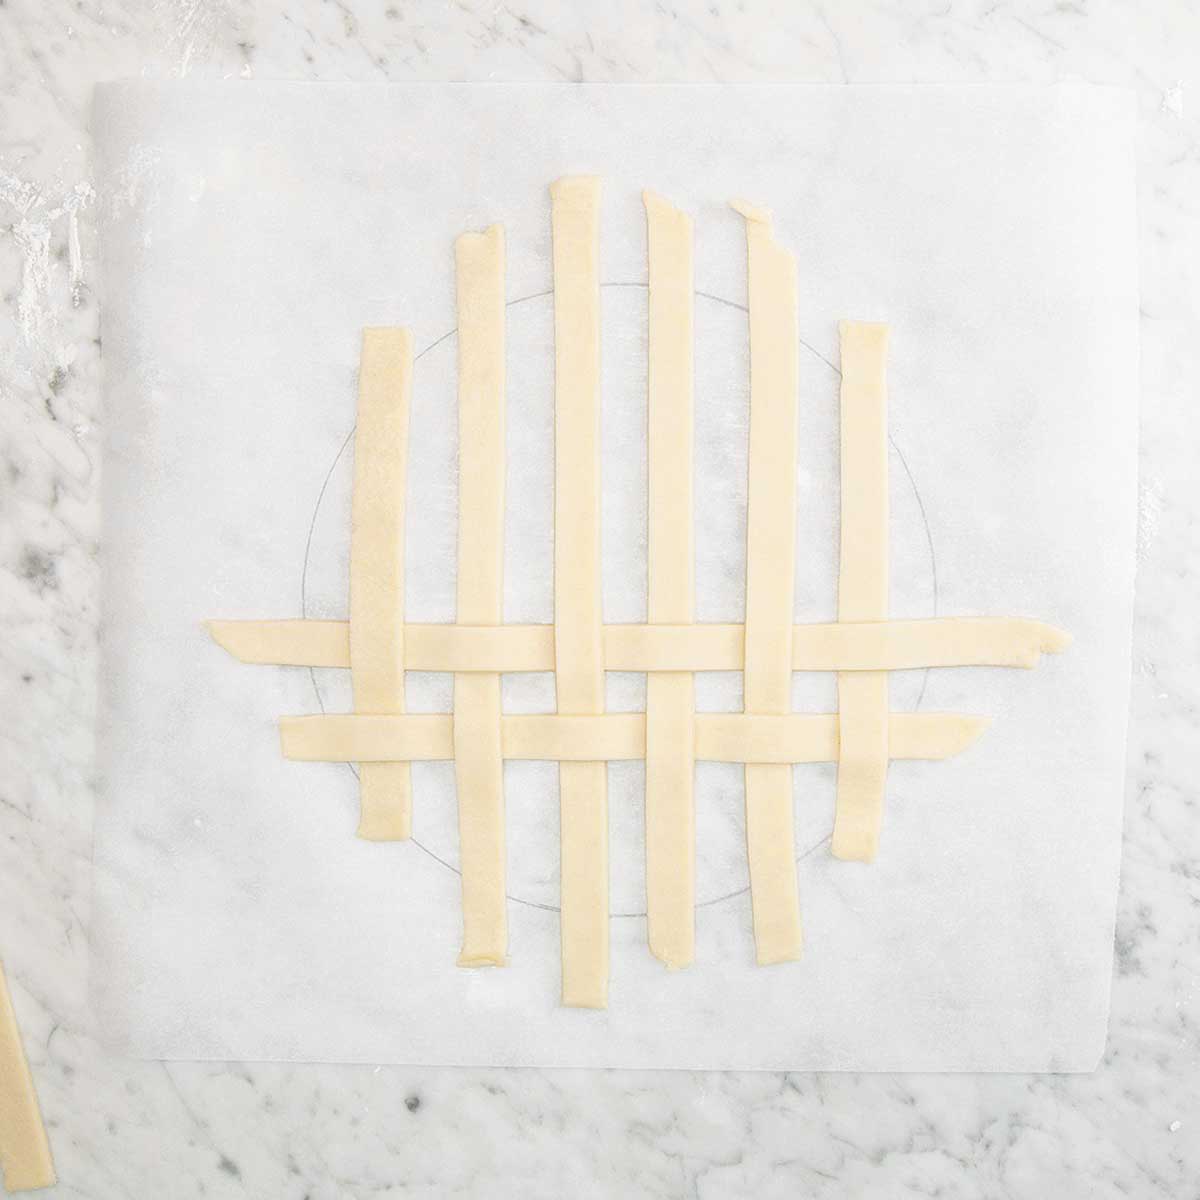 Strips of pie dough arranged in a lattice pattern.